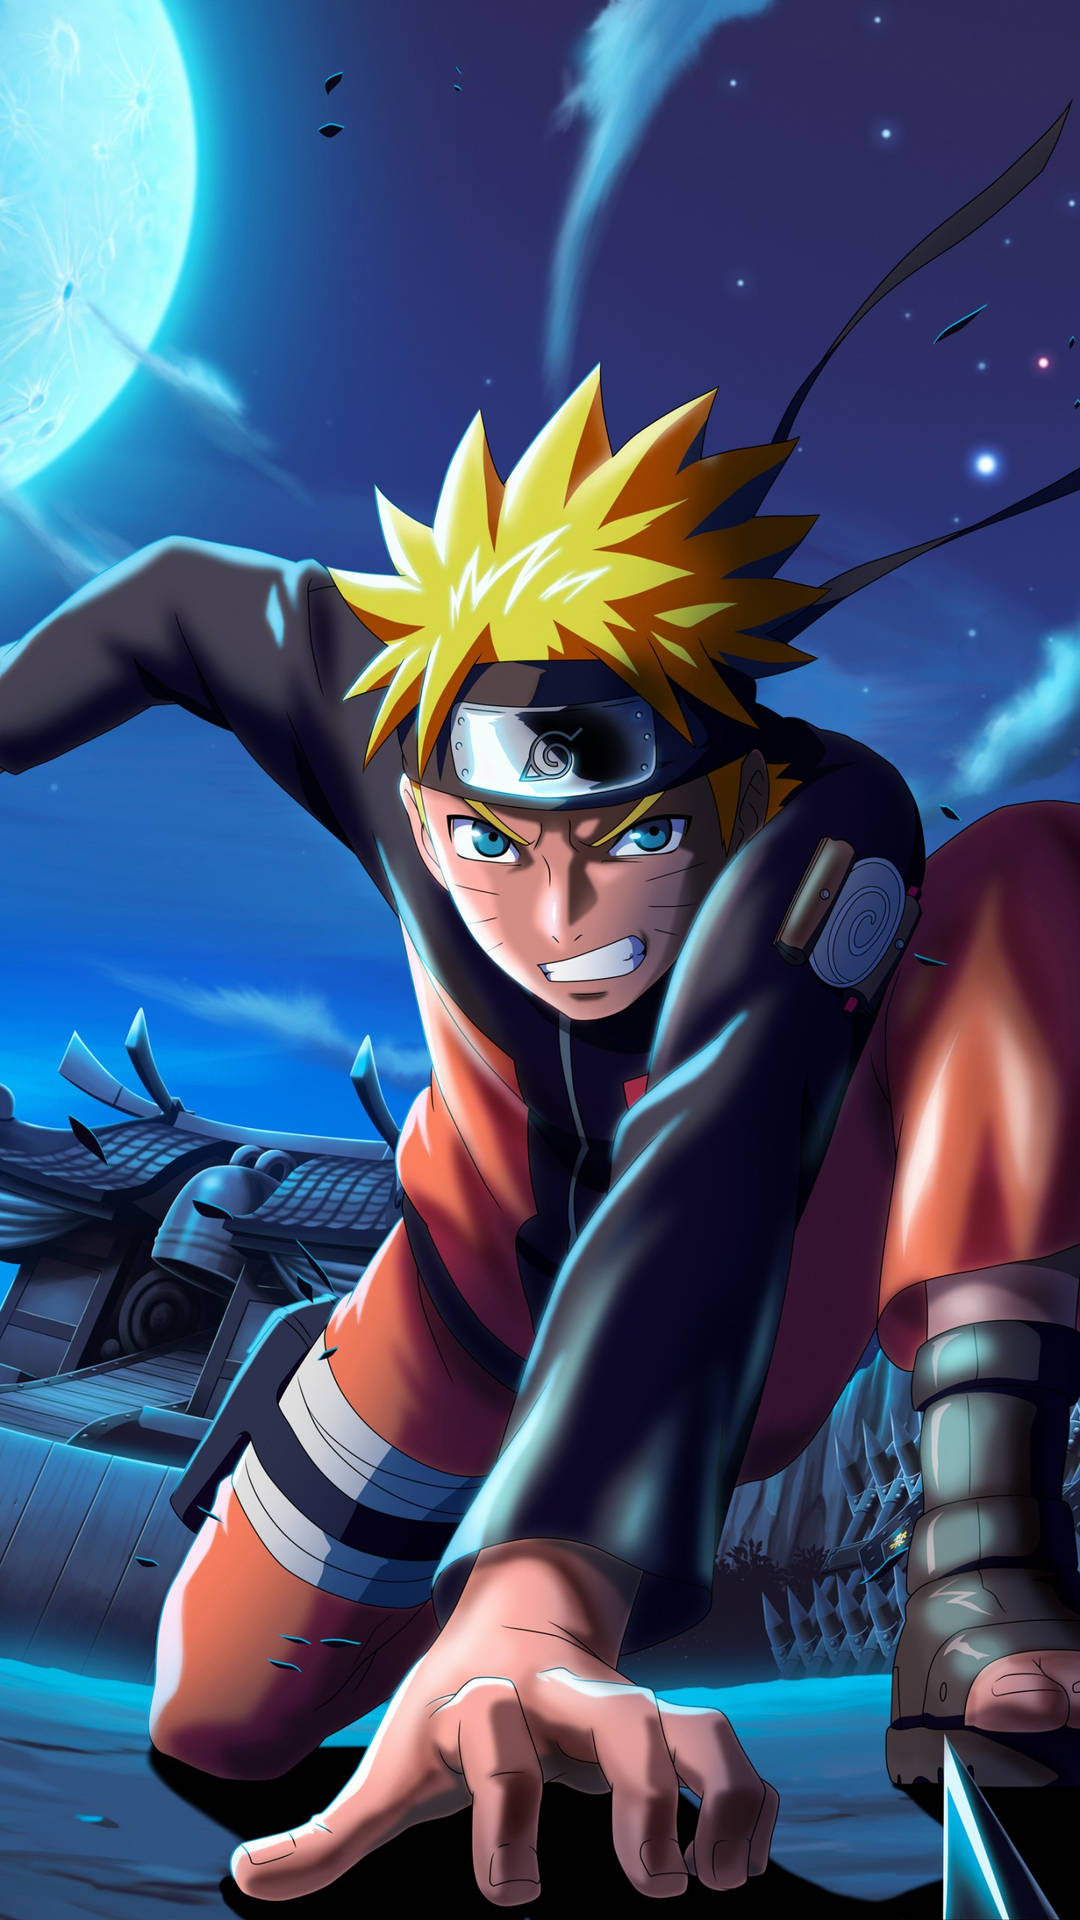 Nếu bạn là một fan của anime Naruto, hãy đặt bức hình nền Naruto trên máy tính của bạn ngay bây giờ để cảm nhận sự mạnh mẽ và hào nhoáng của con người trong làng lá. Hình nền Naruto sẽ giúp bạn truyền tải sự đam mê và cảm xúc của mình với chính nhân vật yêu thích của mình.